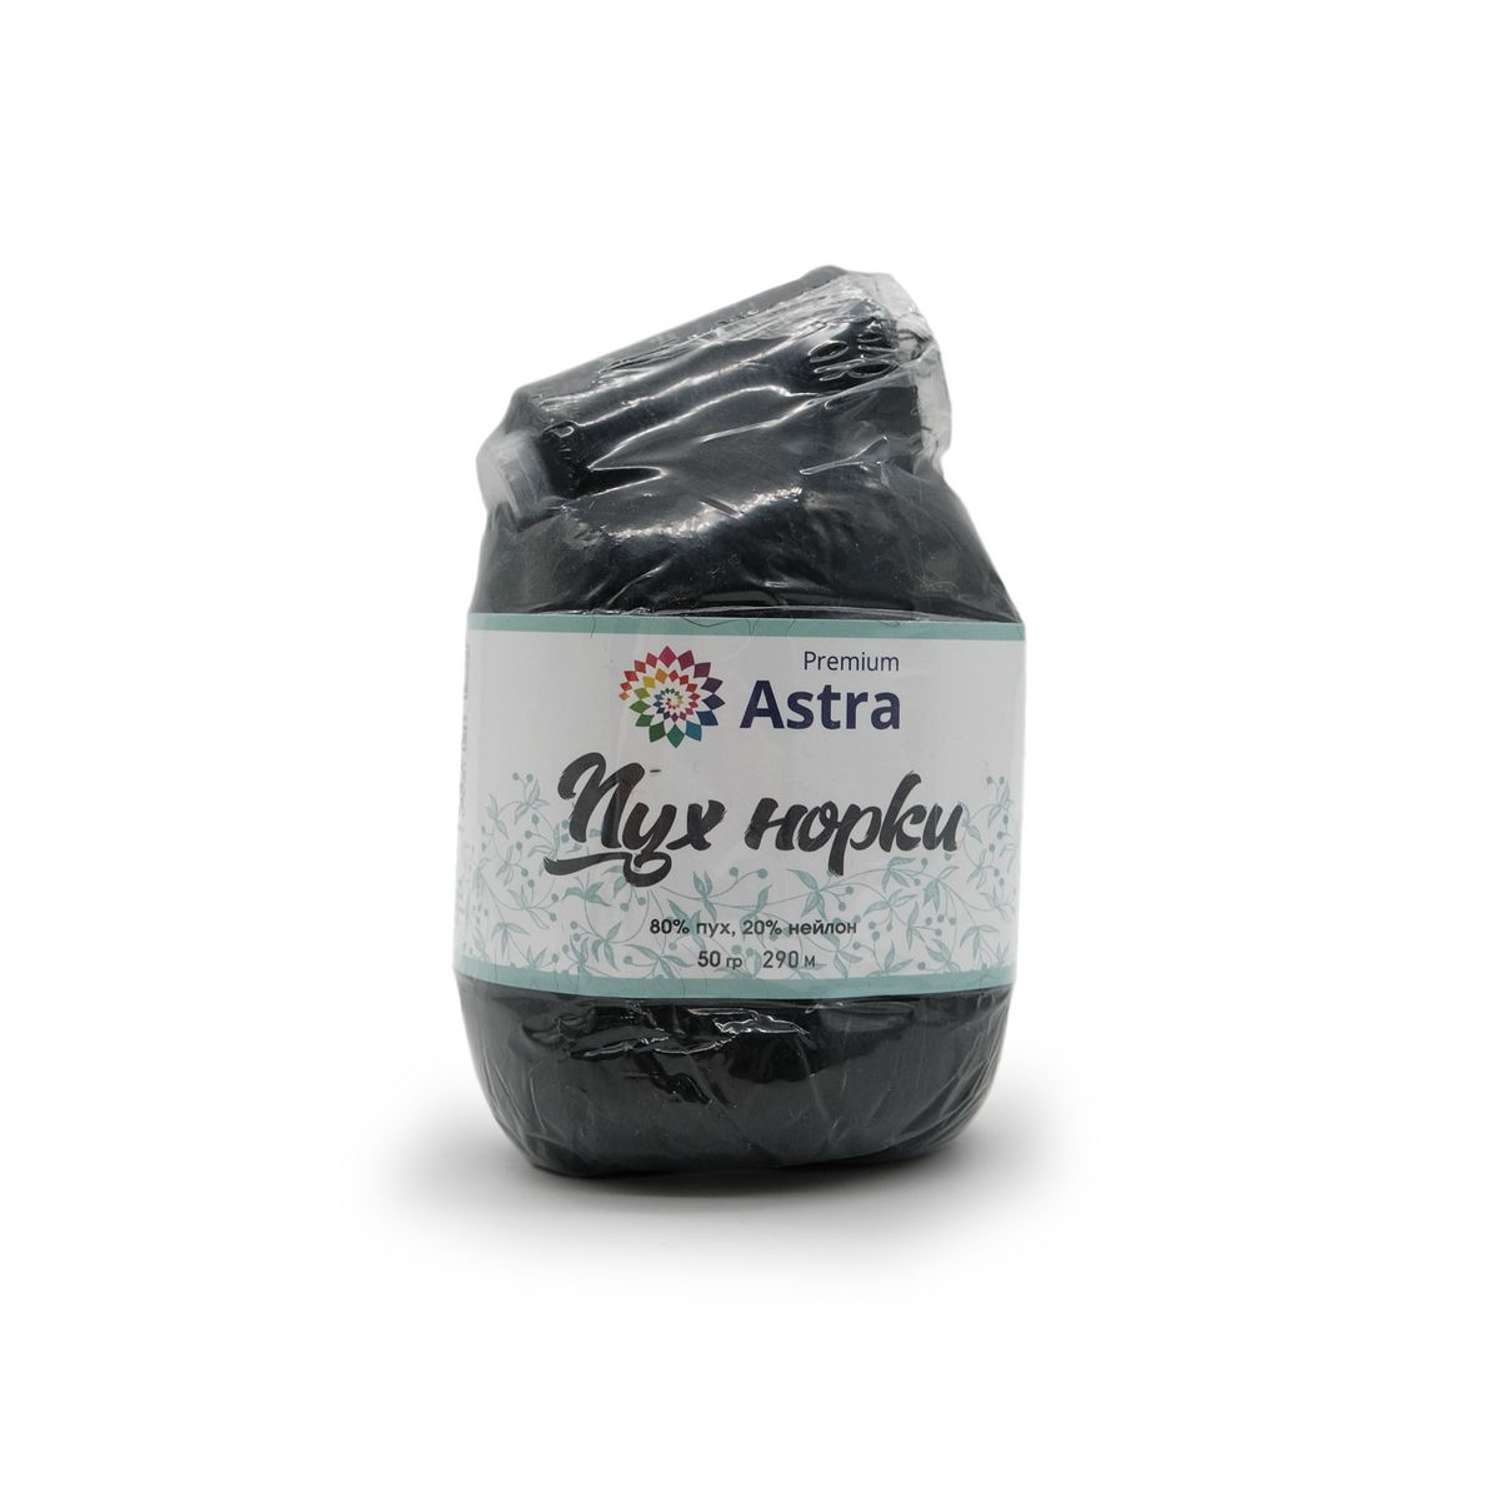 Пряжа Astra Premium Пух норки Mink yarn воздушная с ворсом 50 г 290 м 011 черный 1 моток - фото 6